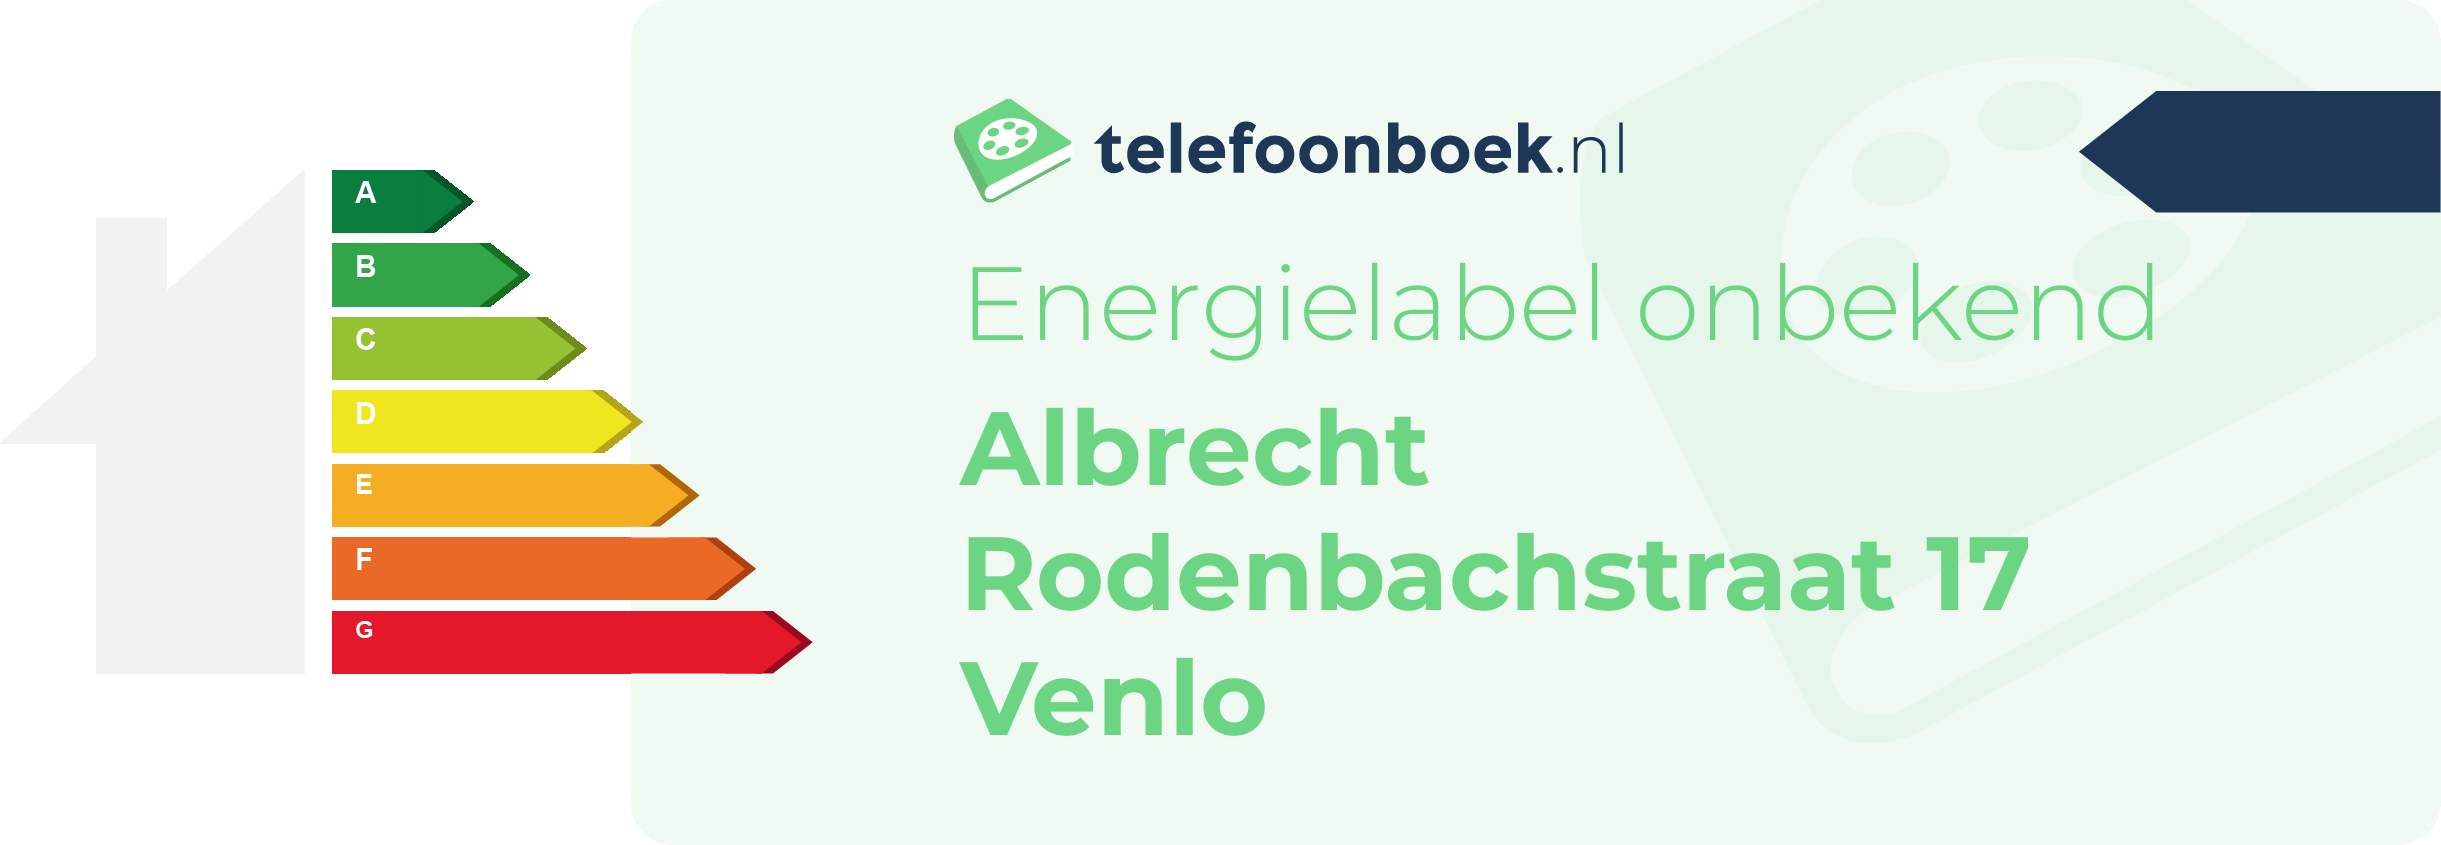 Energielabel Albrecht Rodenbachstraat 17 Venlo